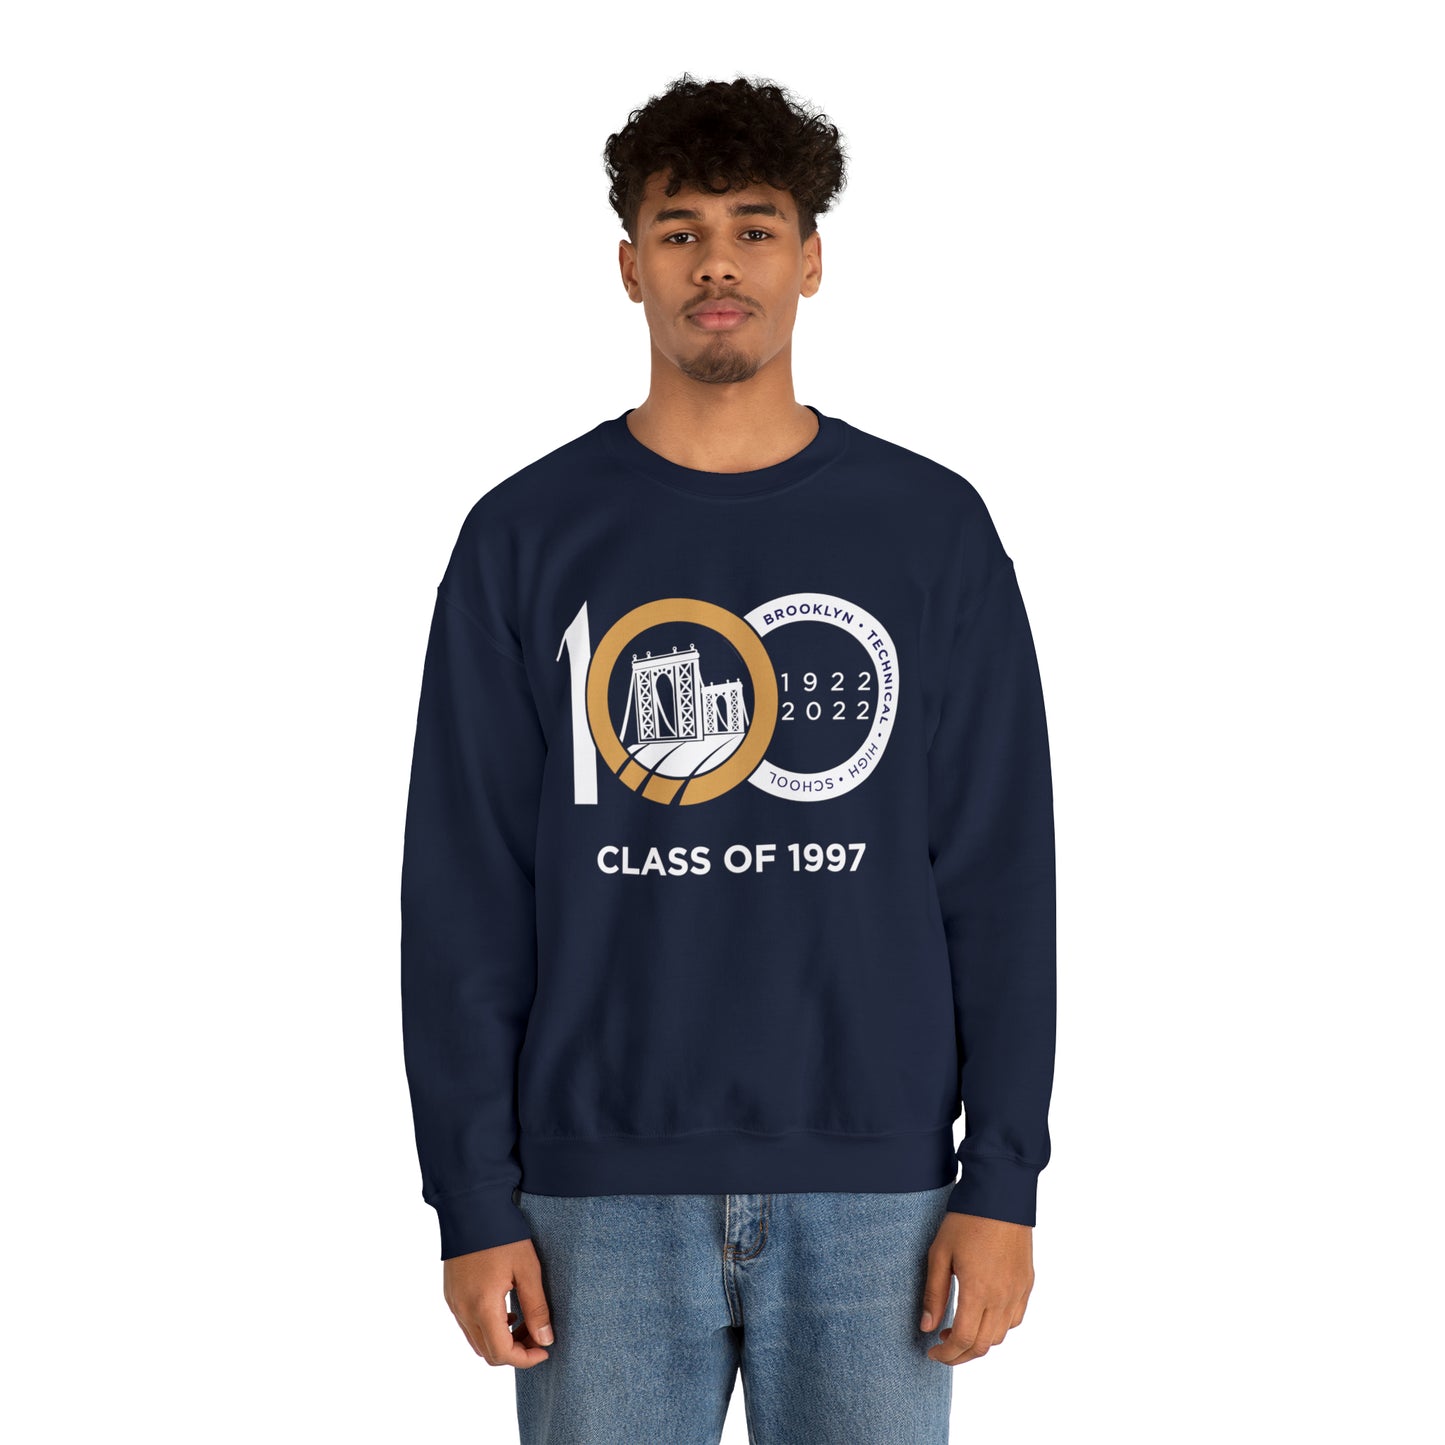 Centennial - Men's Heavy Blend Crewneck Sweatshirt - Class Of 1997